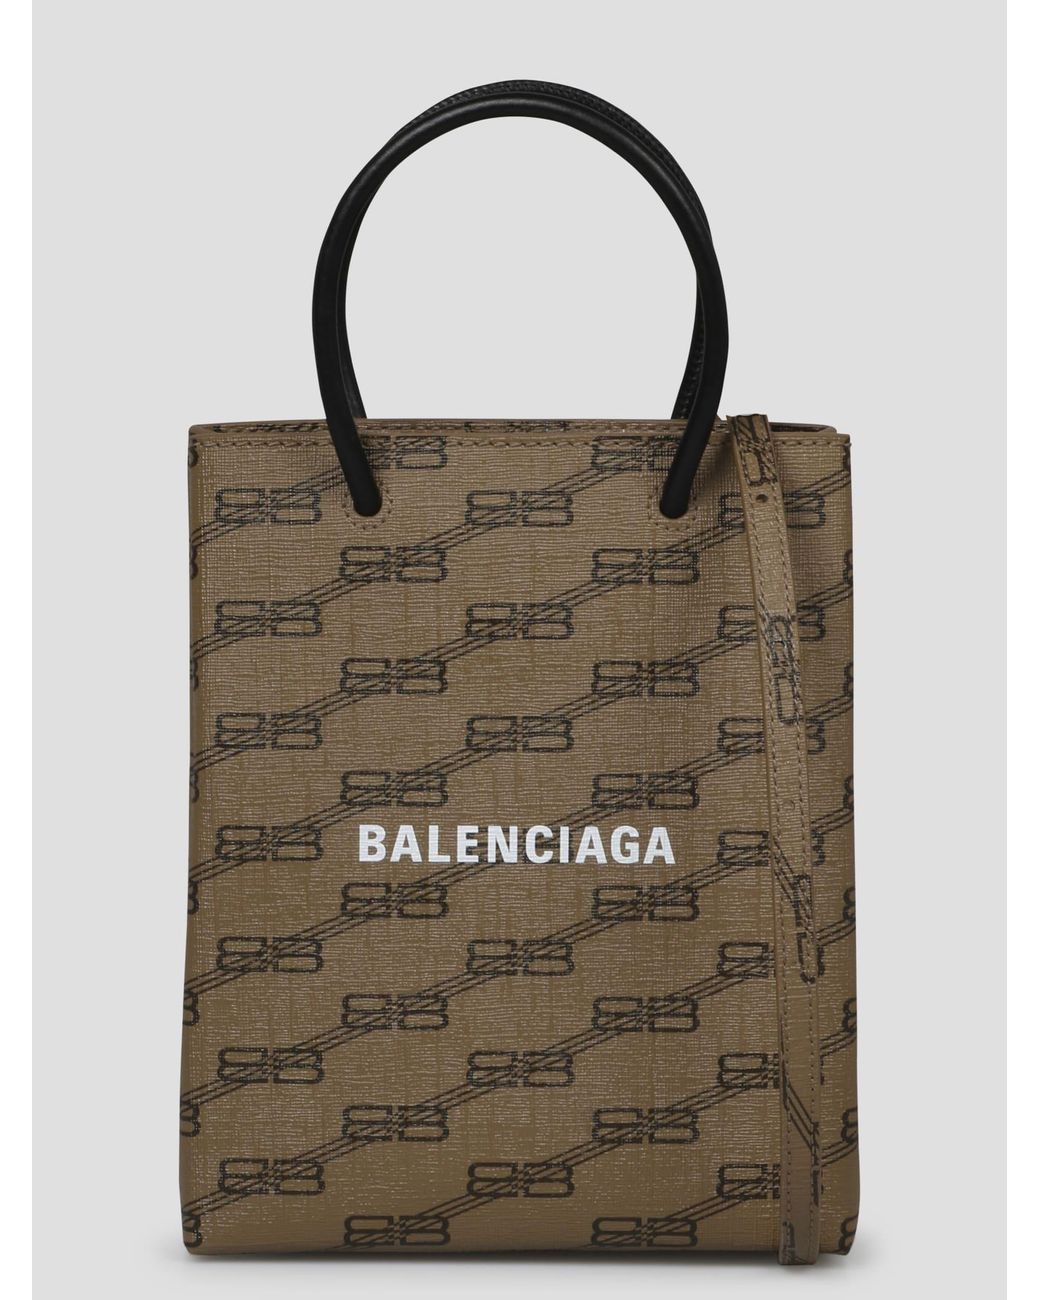 Balenciaga full logo signature in chìm  Tín đồ hàng hiệu